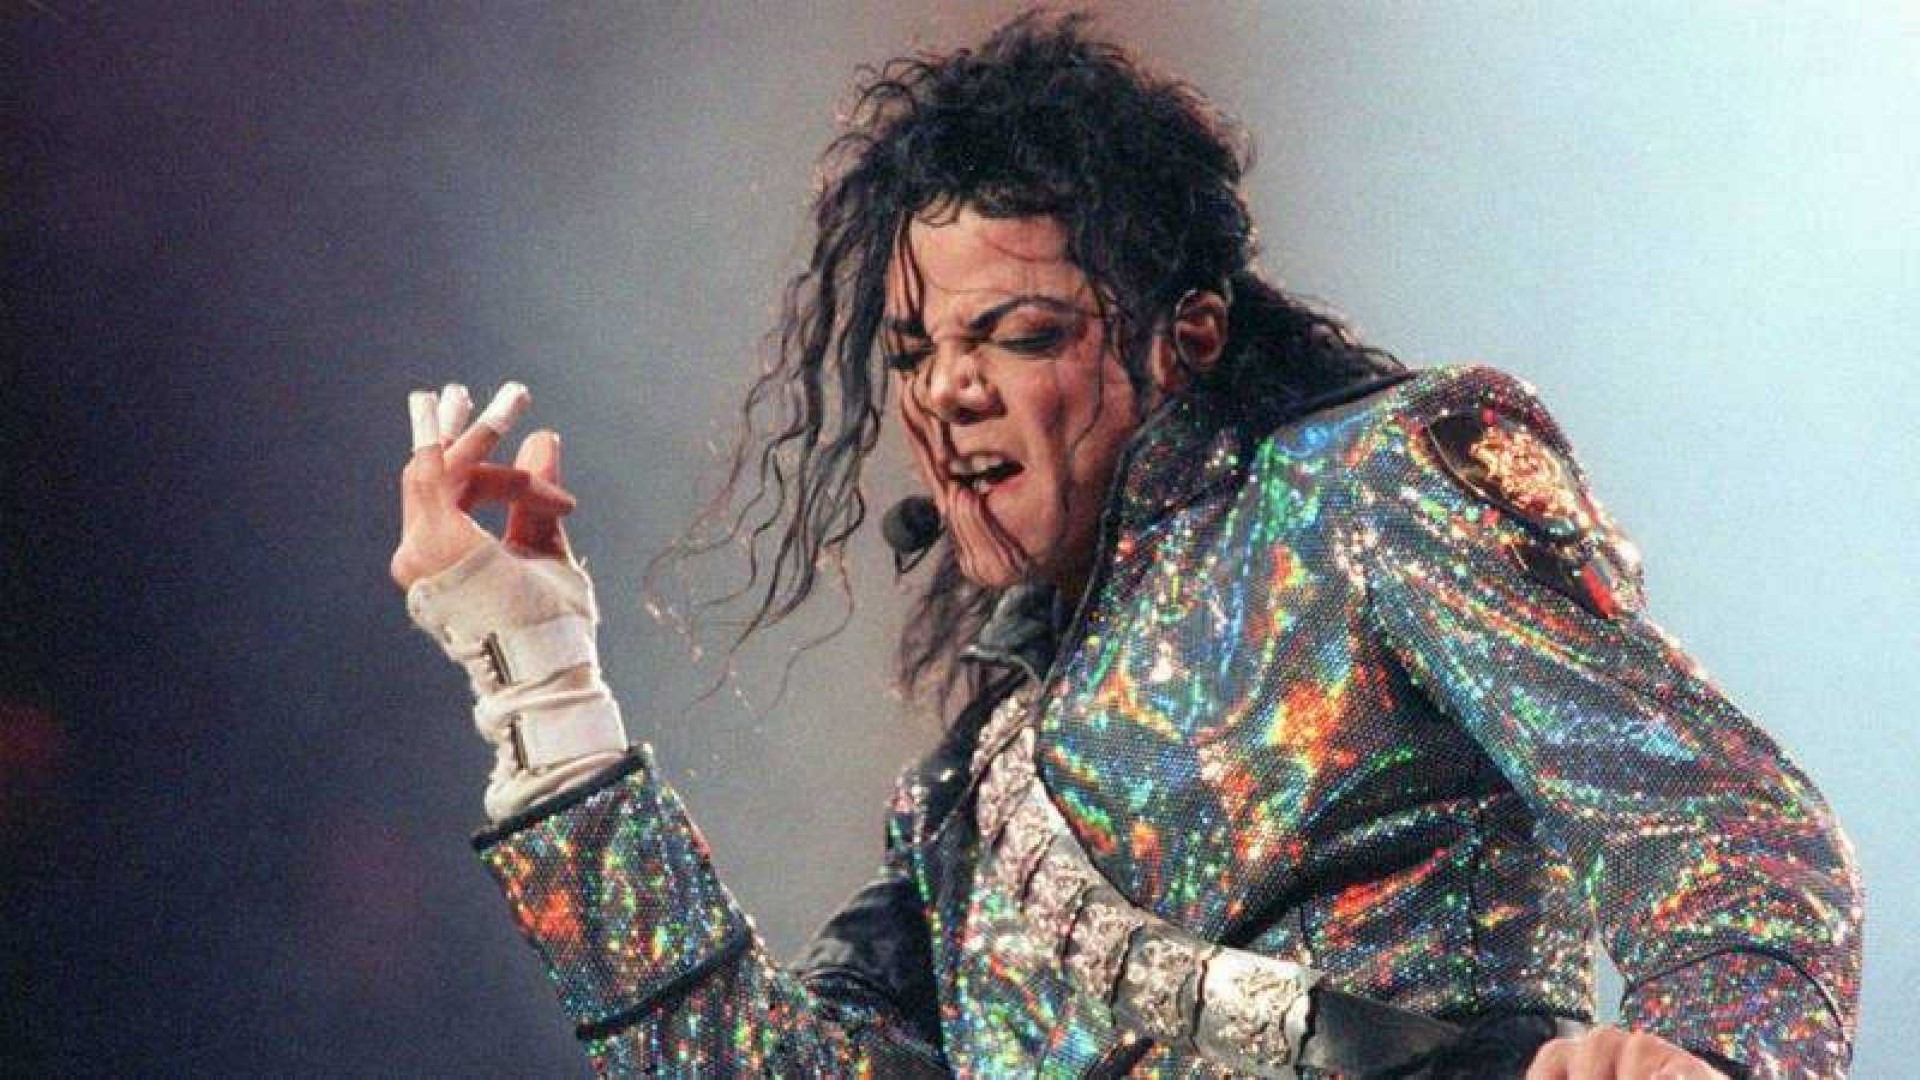 Muzikos pasaulis birželį minės jau 15-ąsias popkaraliumi tituluoto Maiklo Džeksono mirties metines. Tačiau gerbėjai lig šiol nesiliauja medžioję savo stabo palikimo.